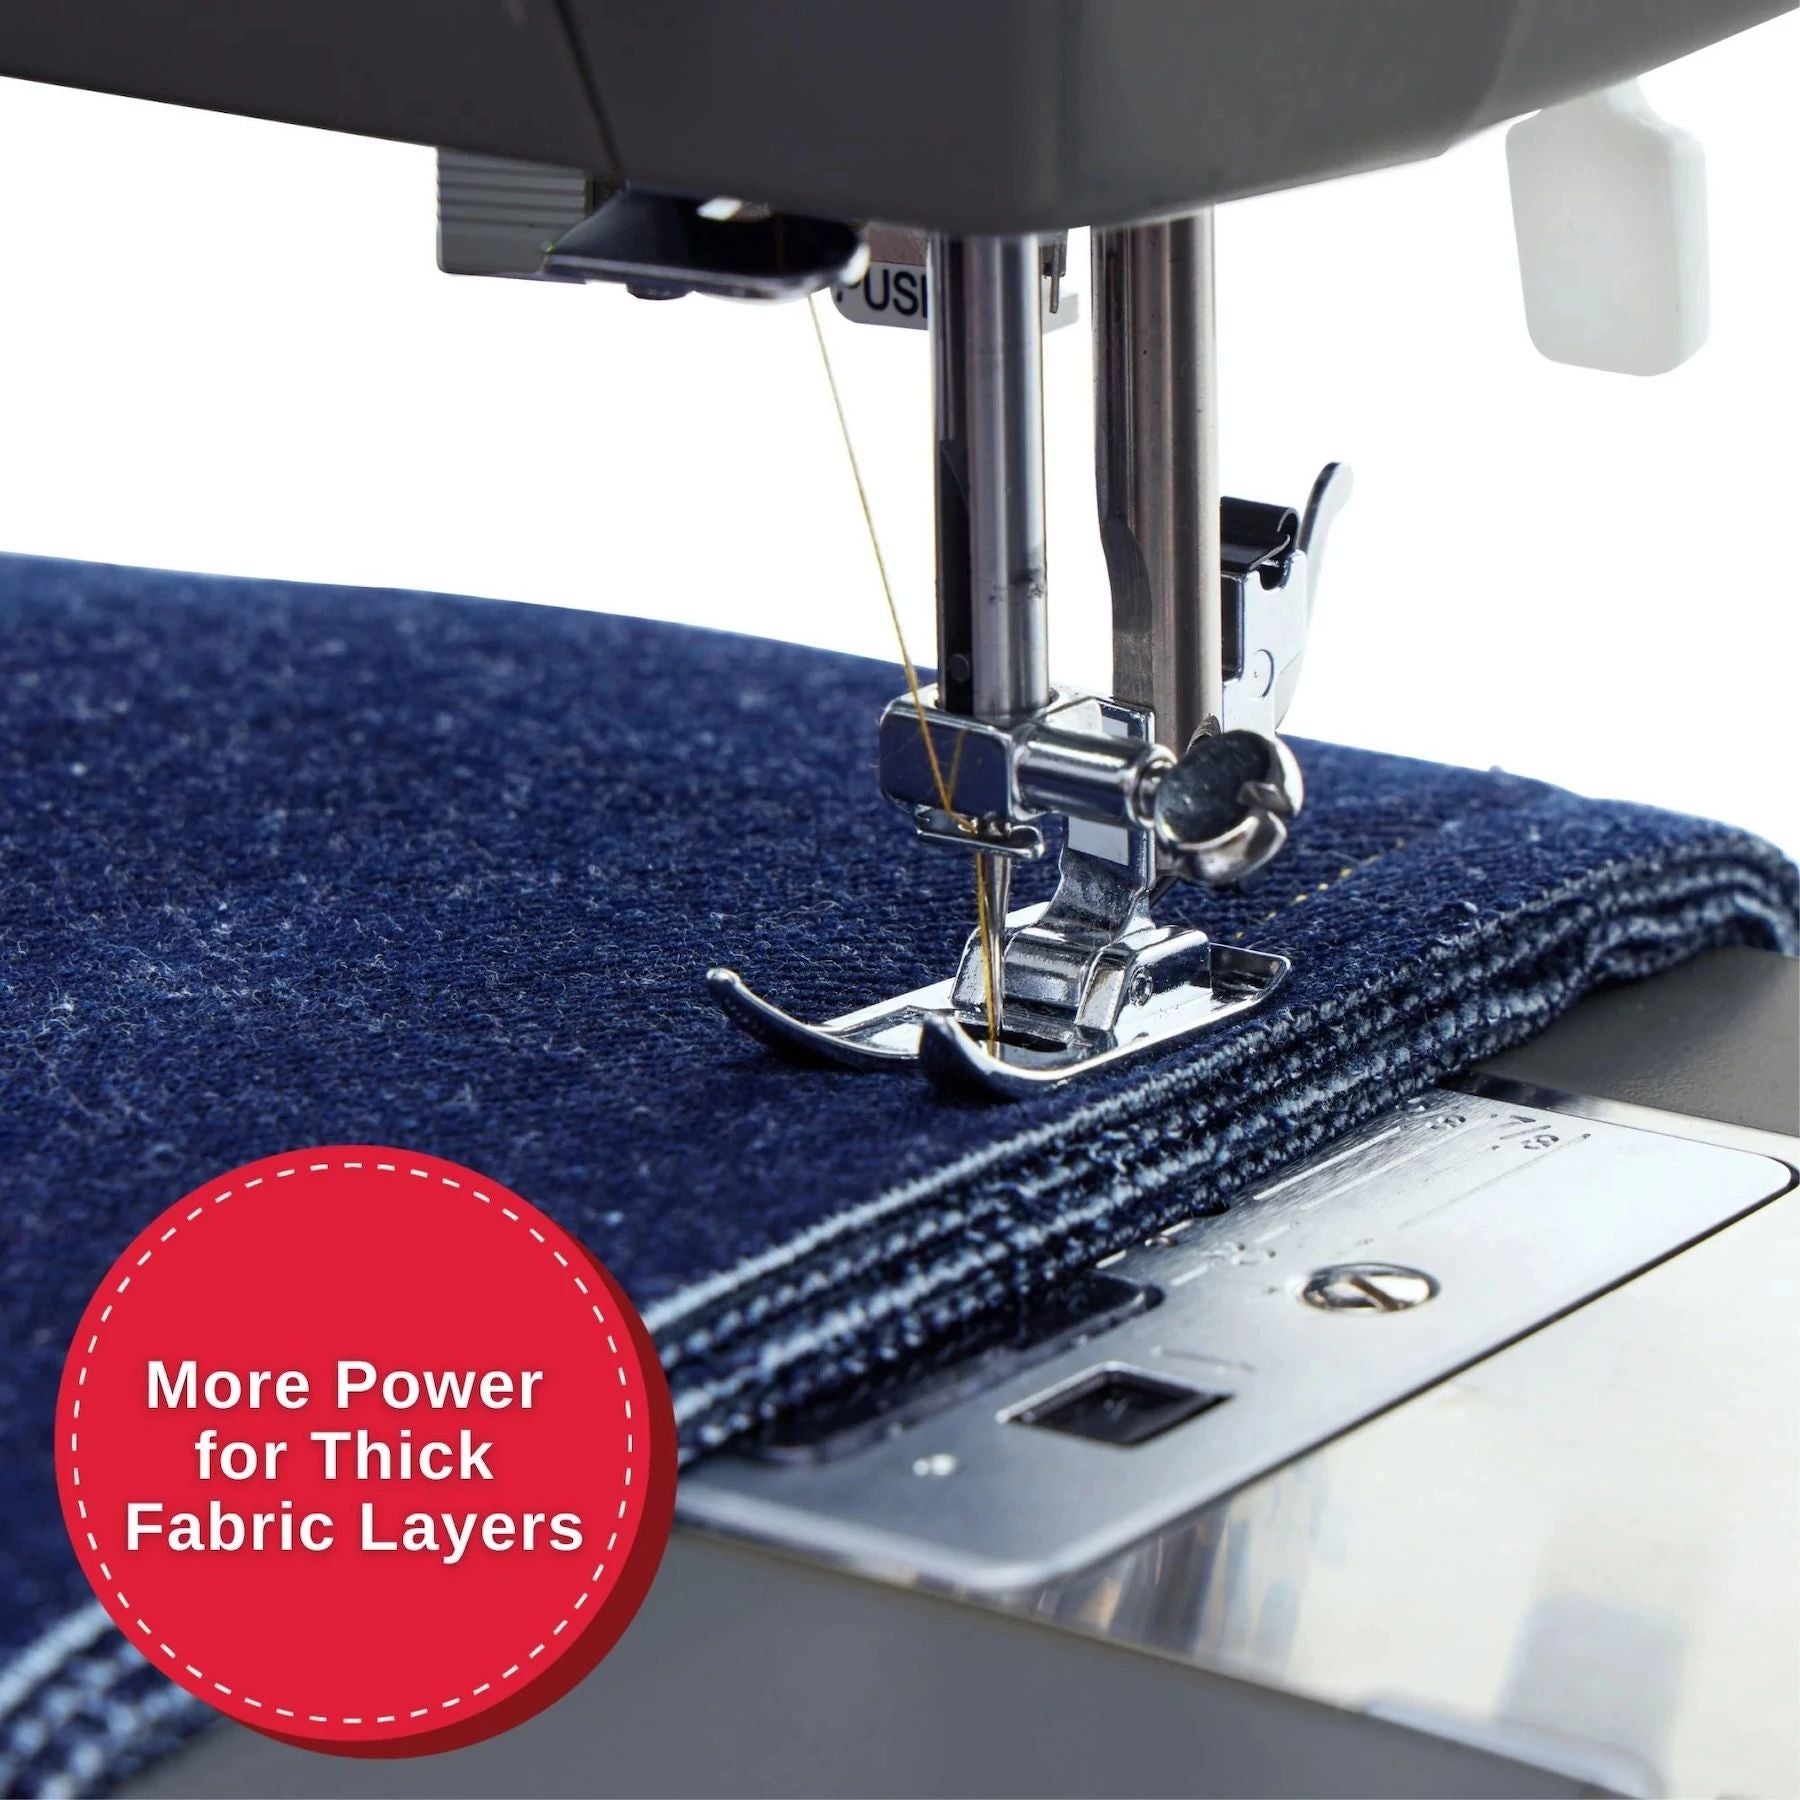 Primer plano de la máquina de coser Singer Heavy Duty 4411 cosiendo una tela azul gruesa.